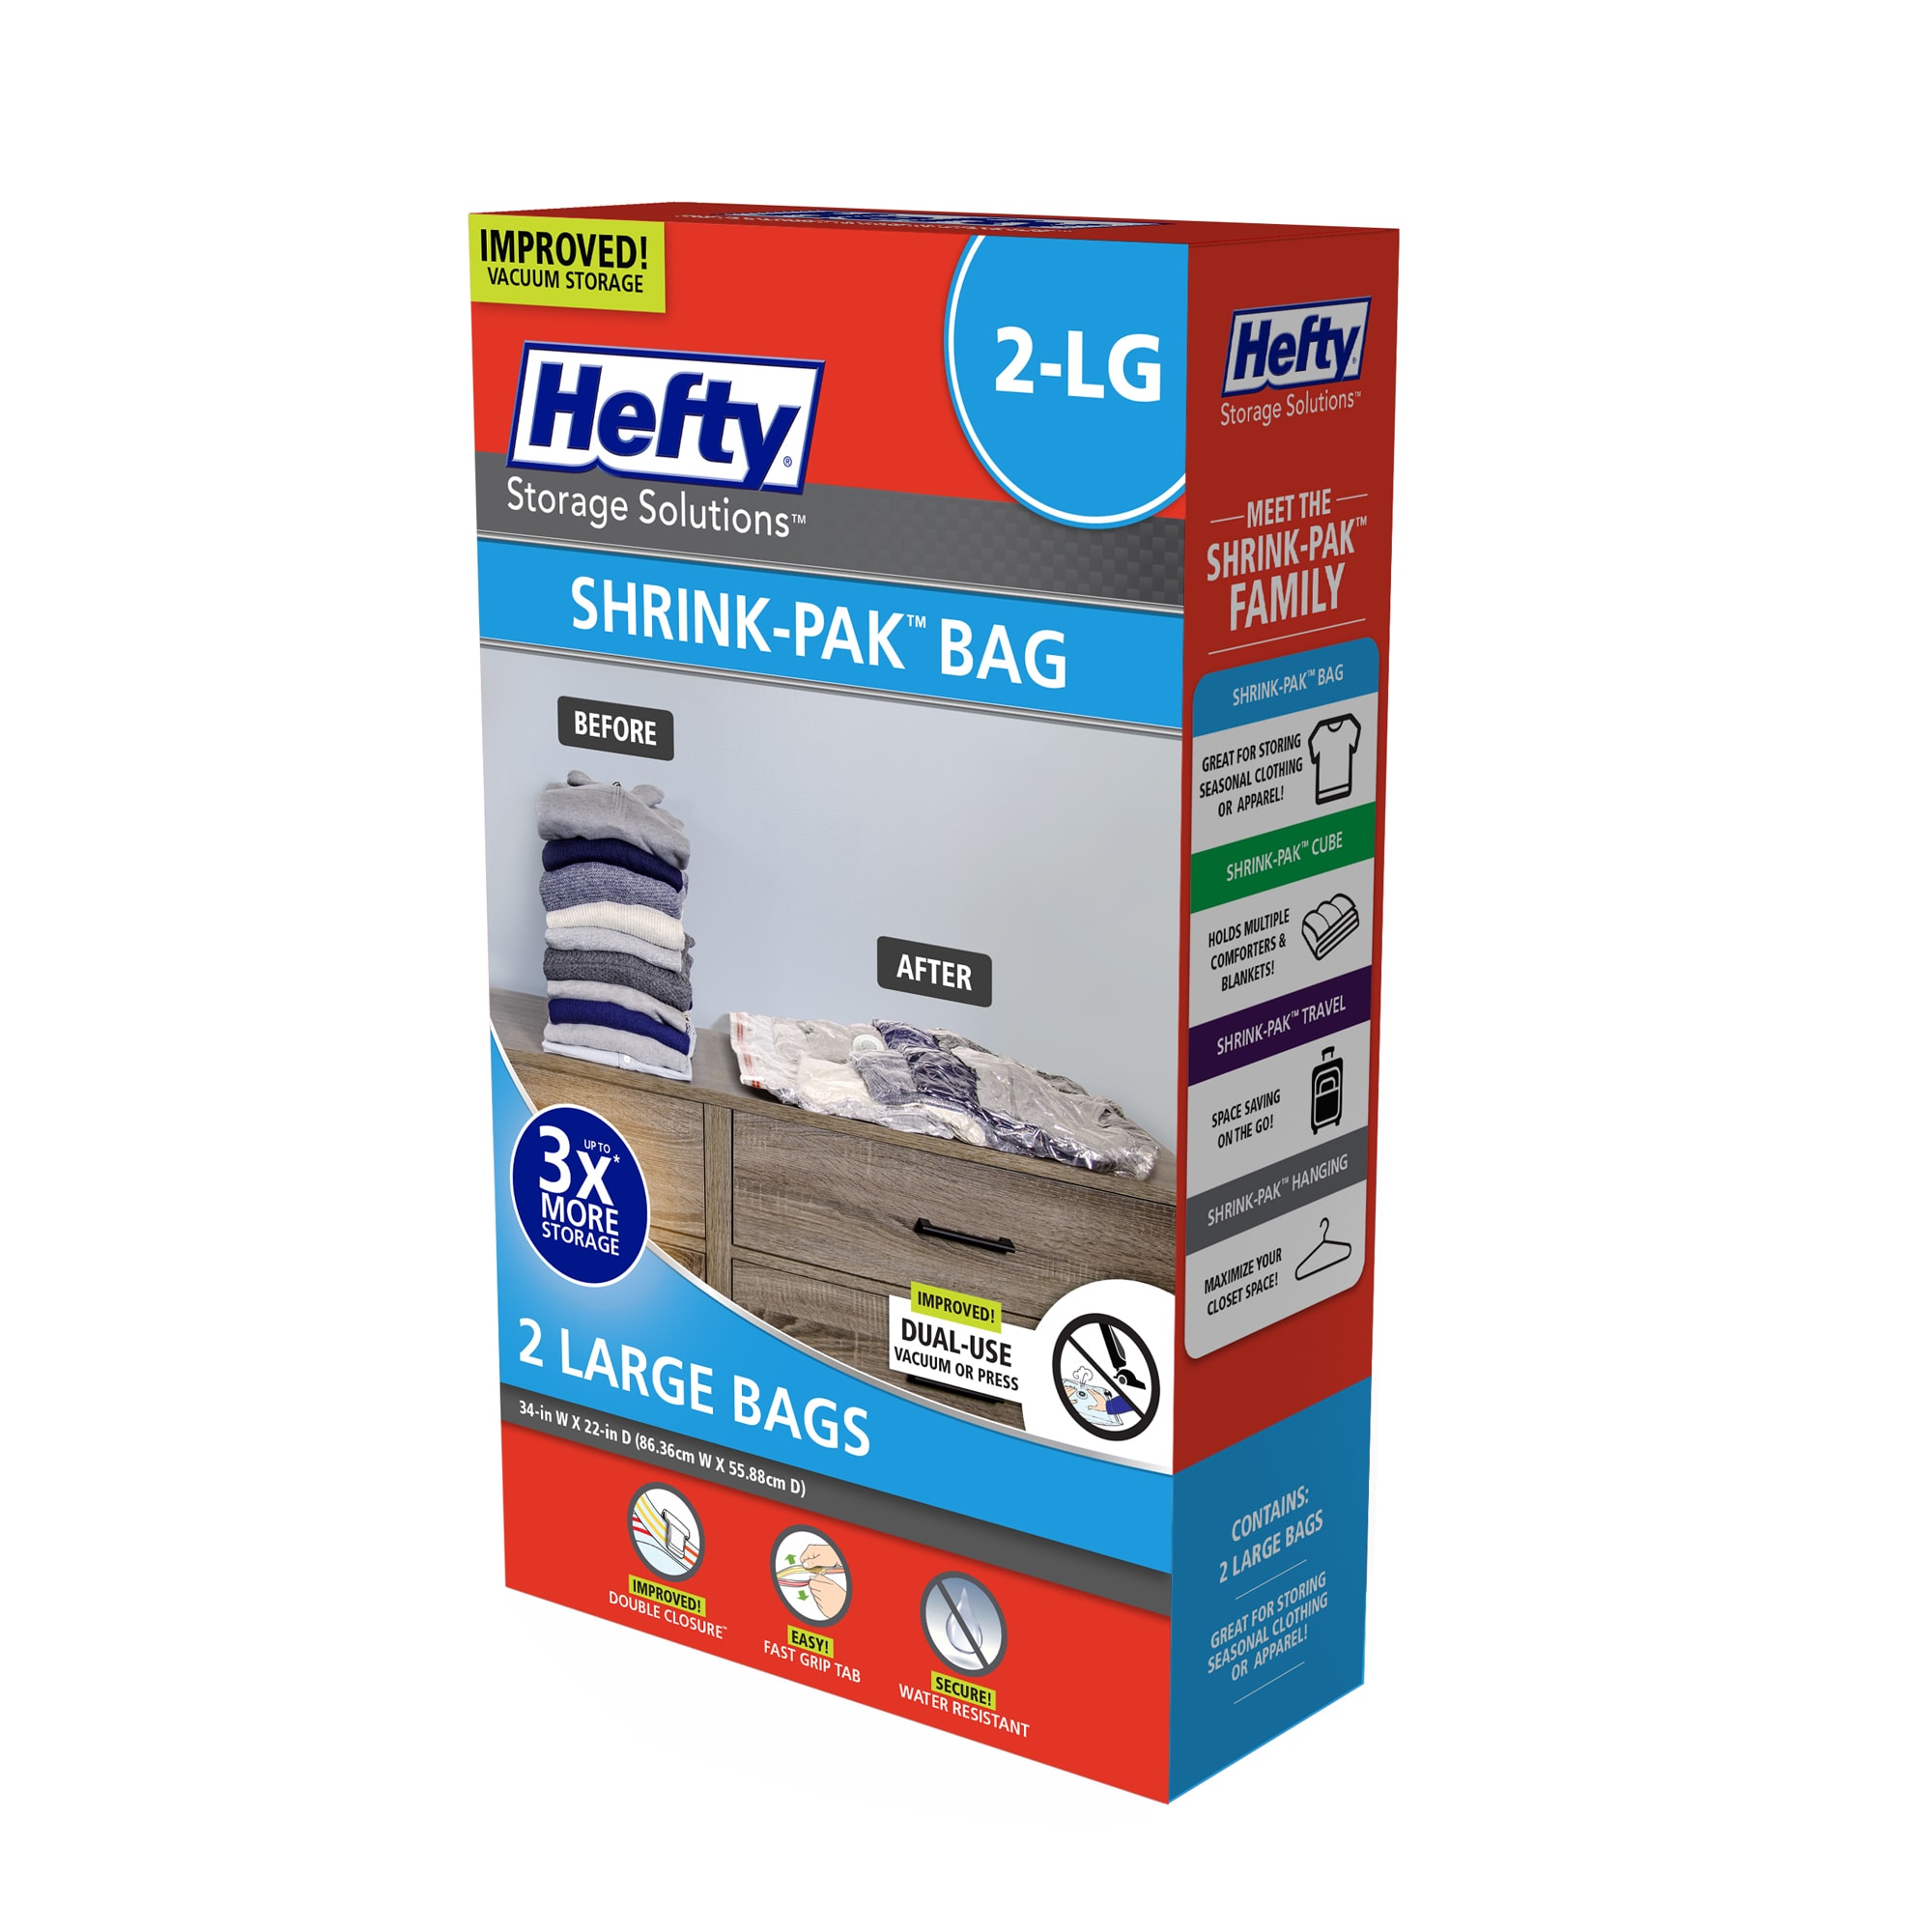 Pac N Stack Storage Bags, Vacuumed Air-Tight - 4 bags